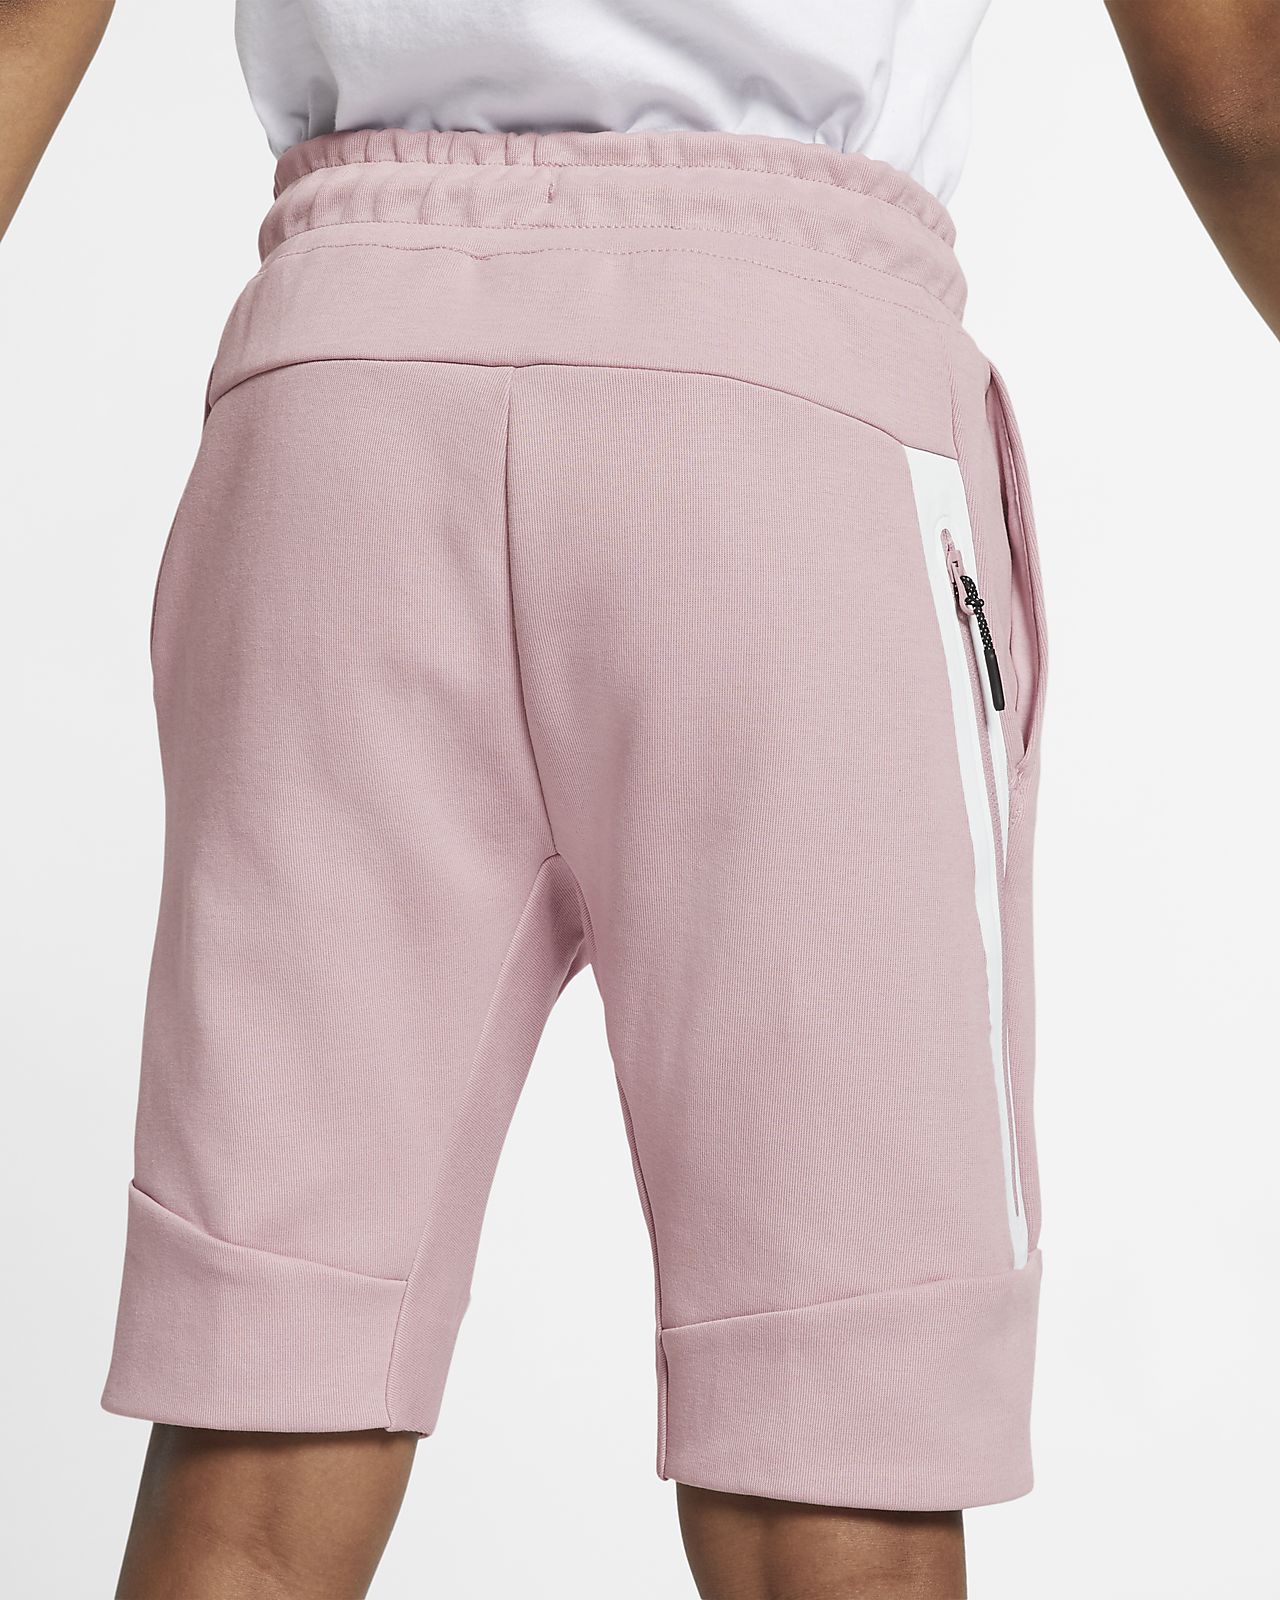 nike tech fleece shorts pink